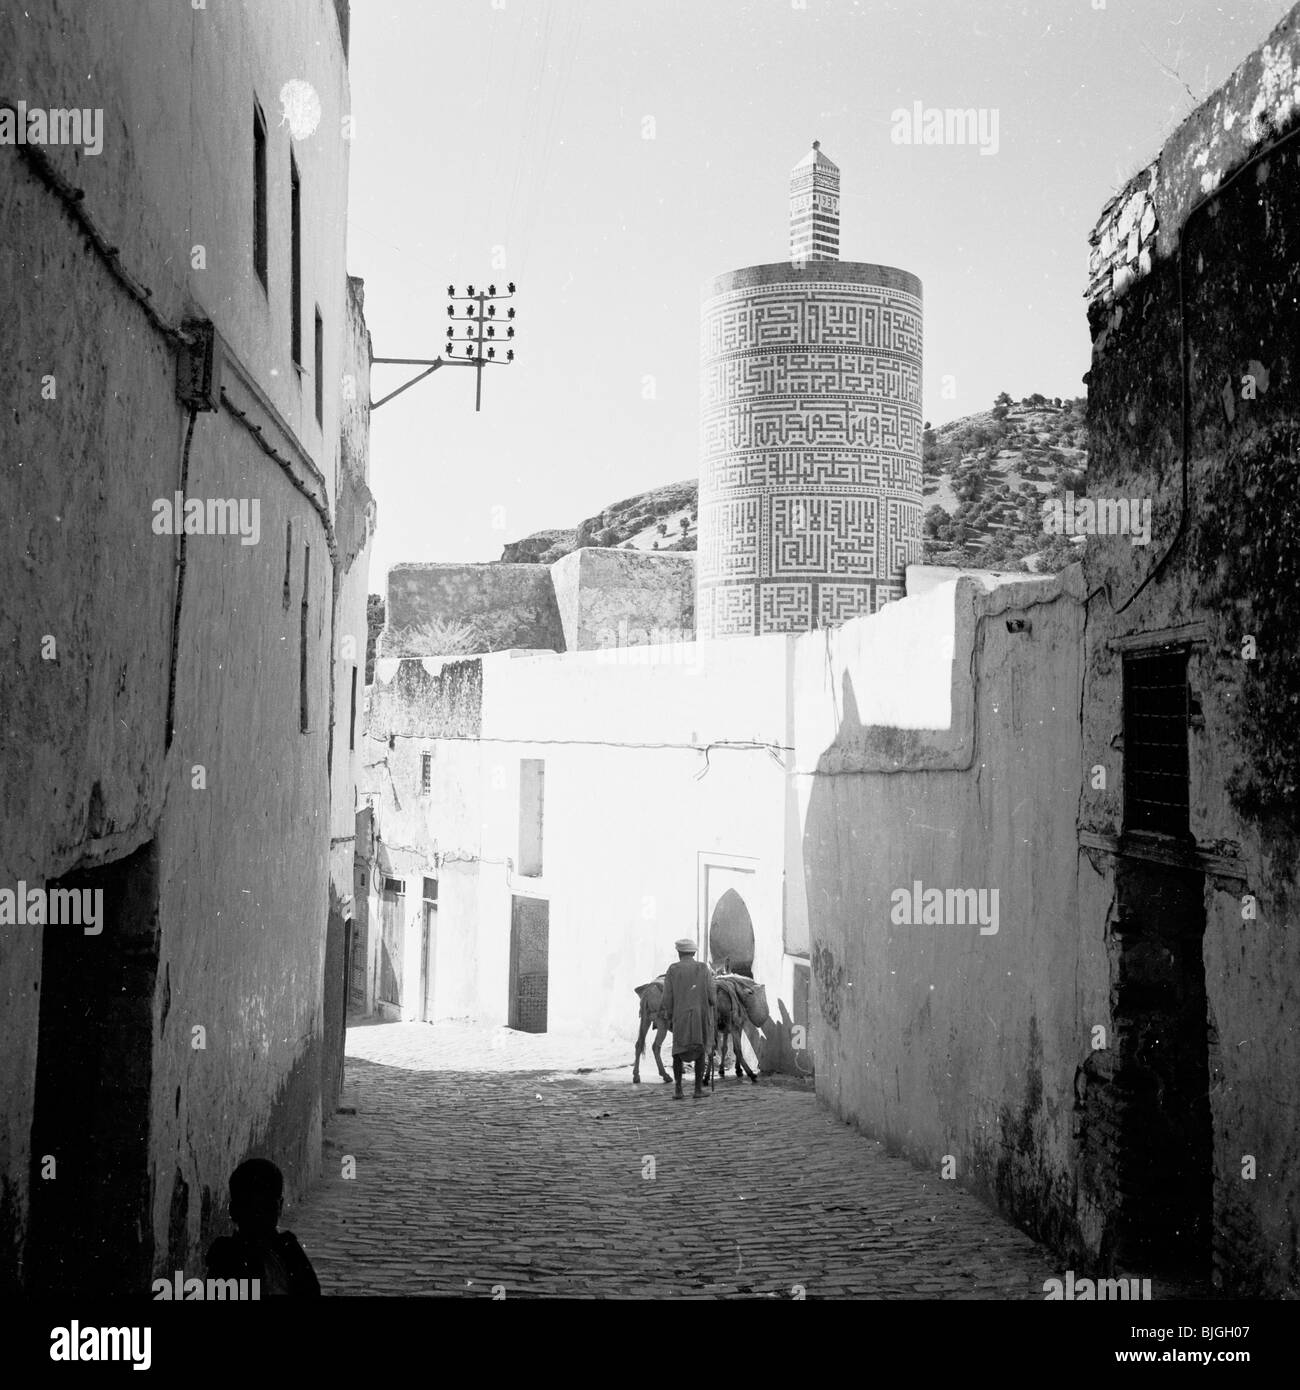 der 1950er Jahre in diesem Geschichtsbild begleichen Sonnenlicht und Schatten über Teile von einem ummauerten Dorf Sidestreet, Marokko. Stockfoto